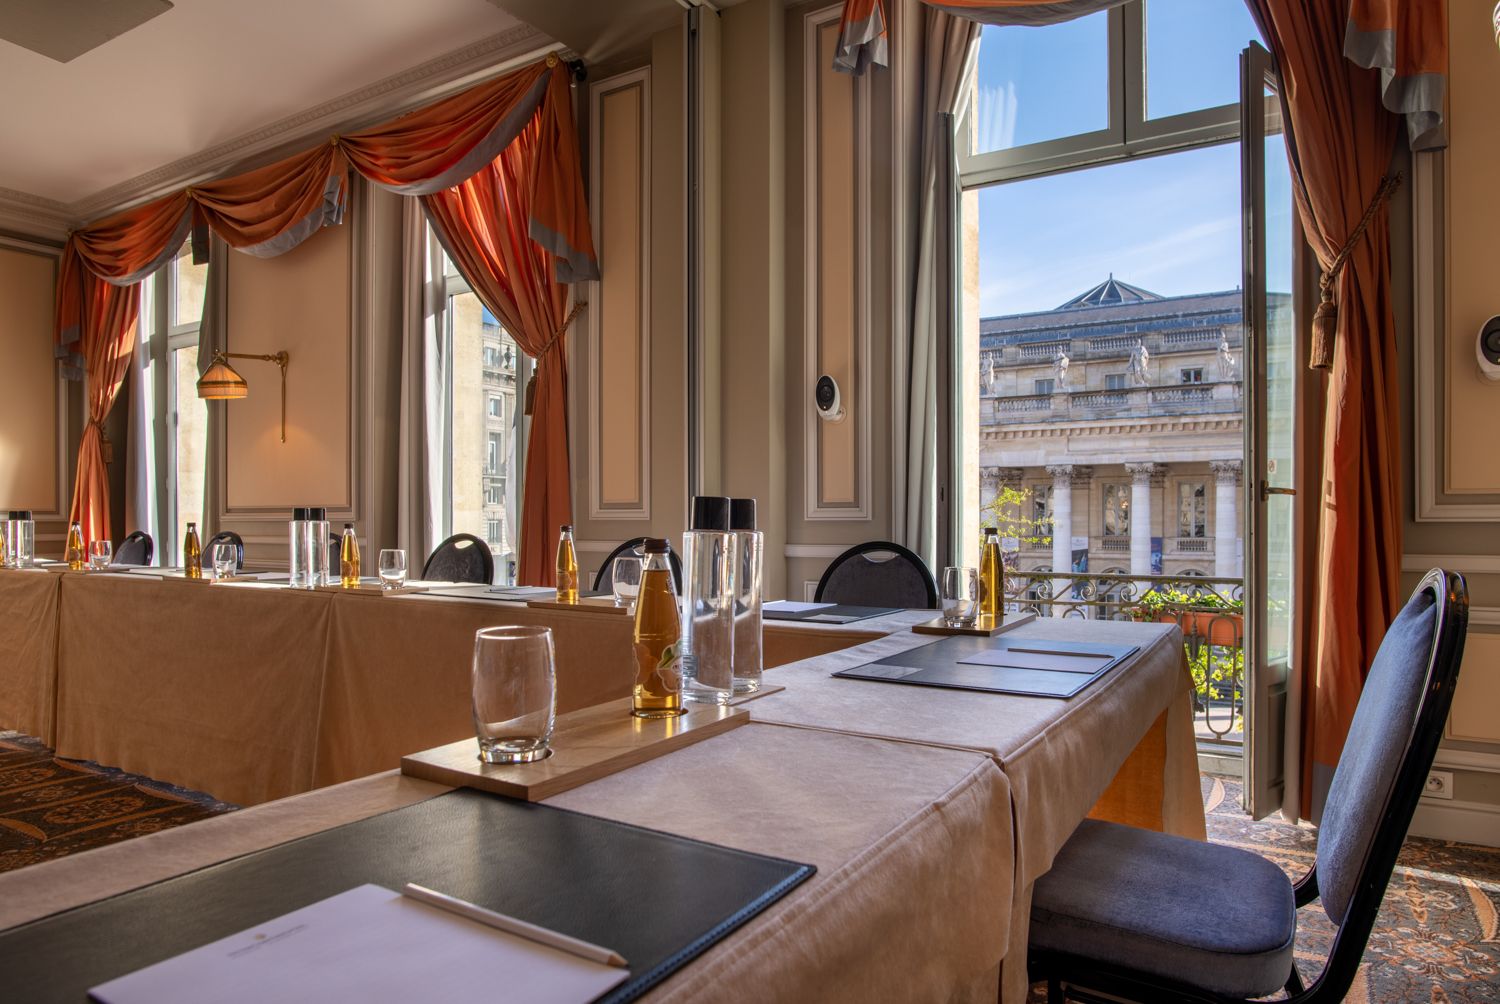 InterContinental Bordeaux - Le Grand Hotel - Evenement privés